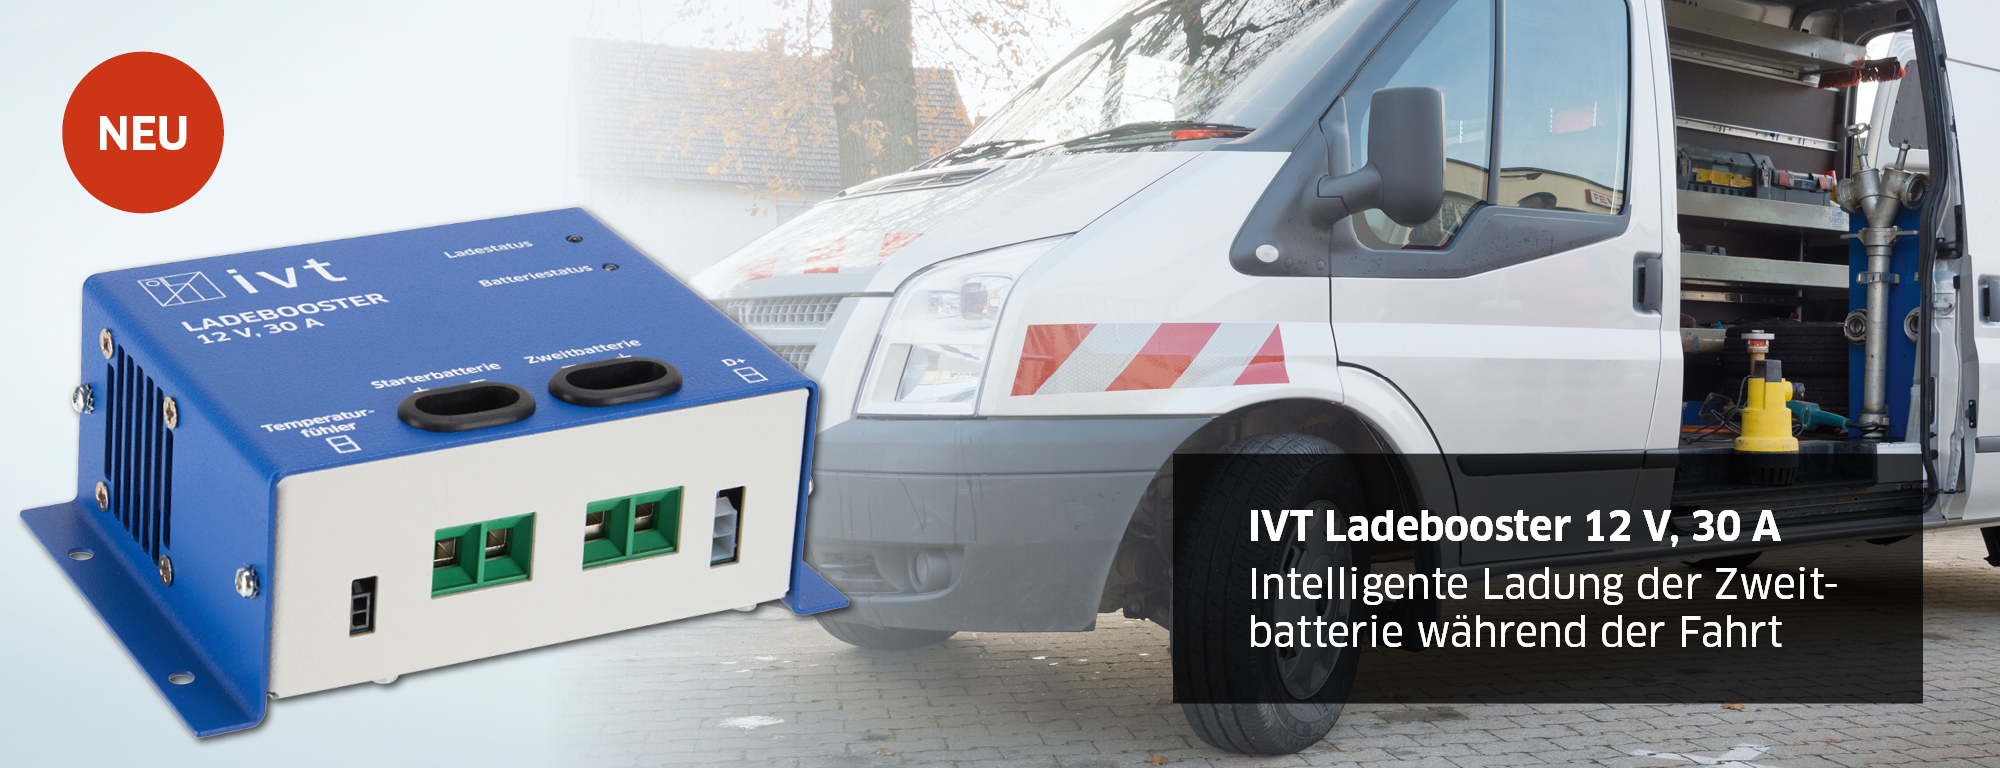 IVT Ladebooster | Intelligente Ladung der Zweitbatterie